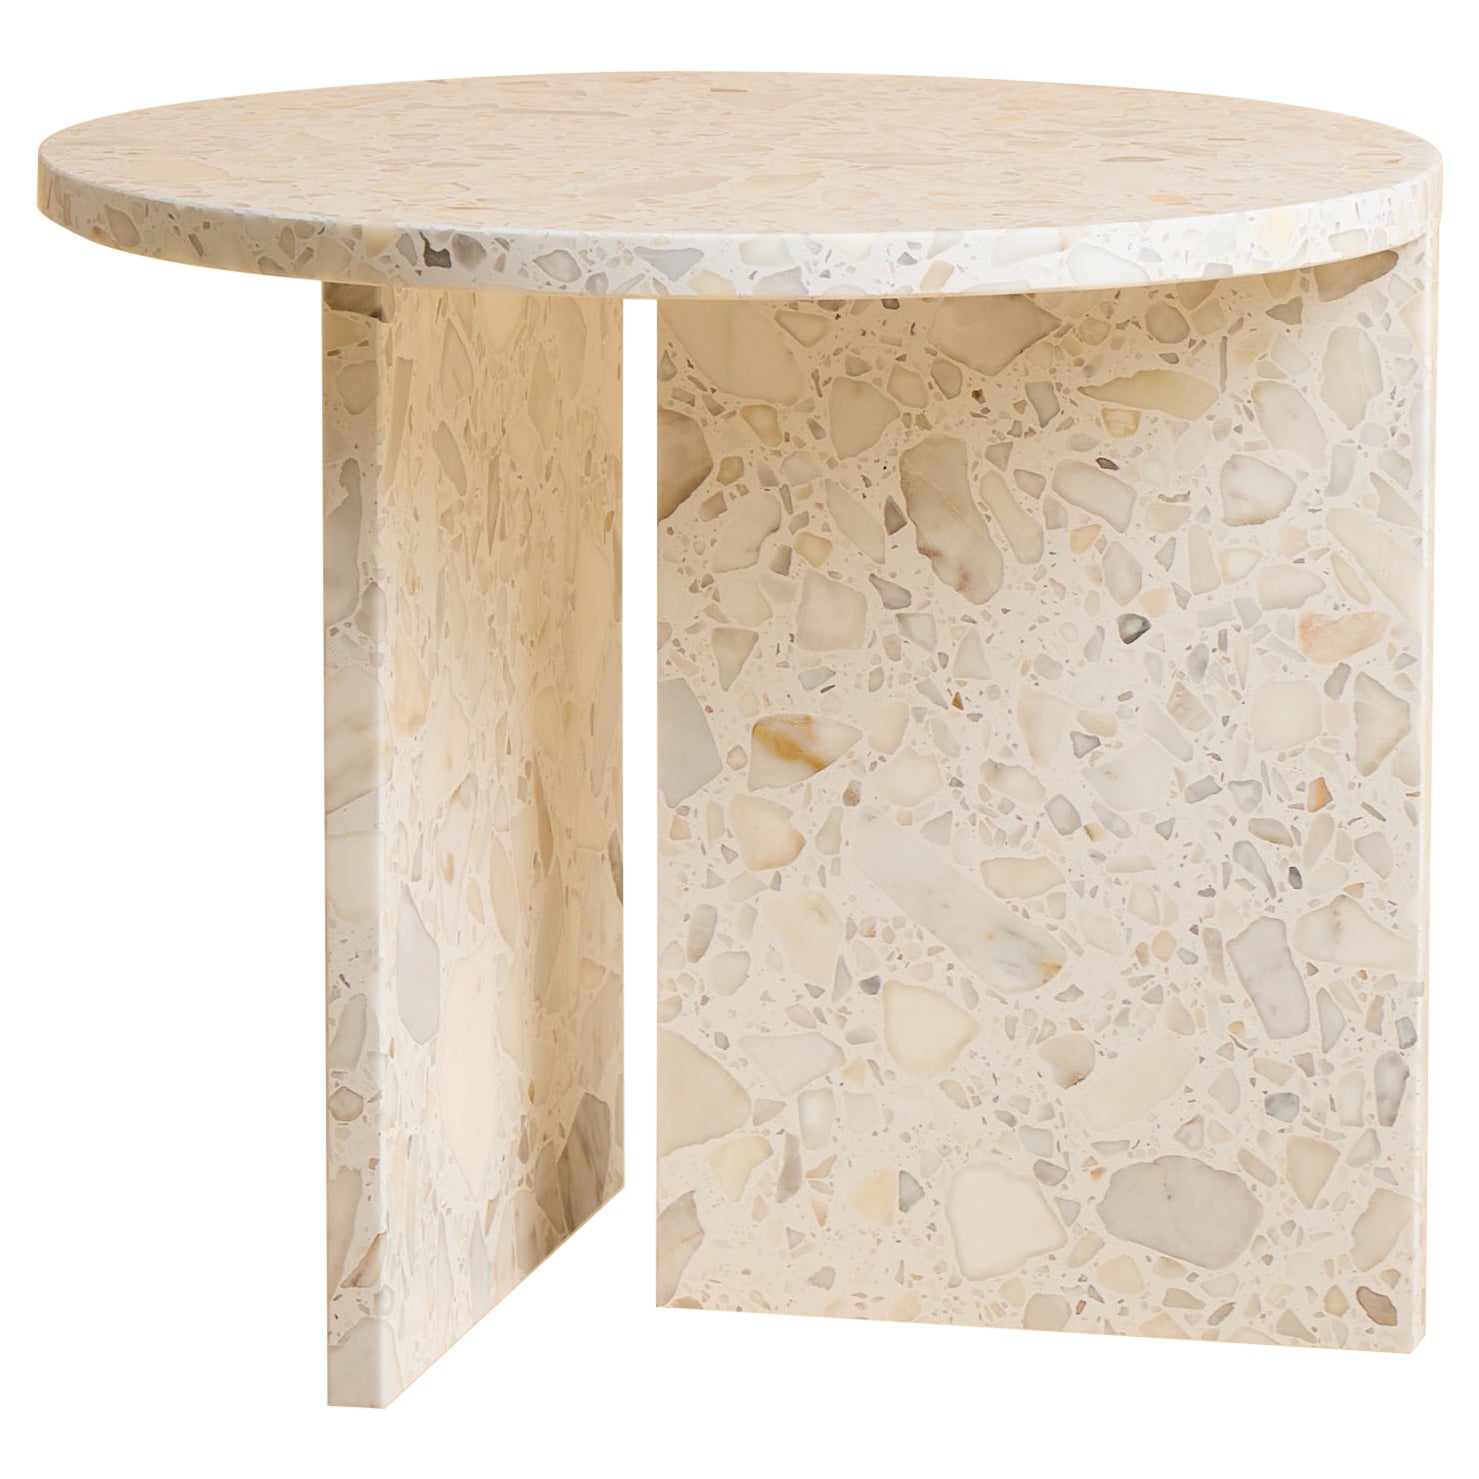 Table basse circulaire en marbre de Carrare et terrazzo, fabriquée en Italie